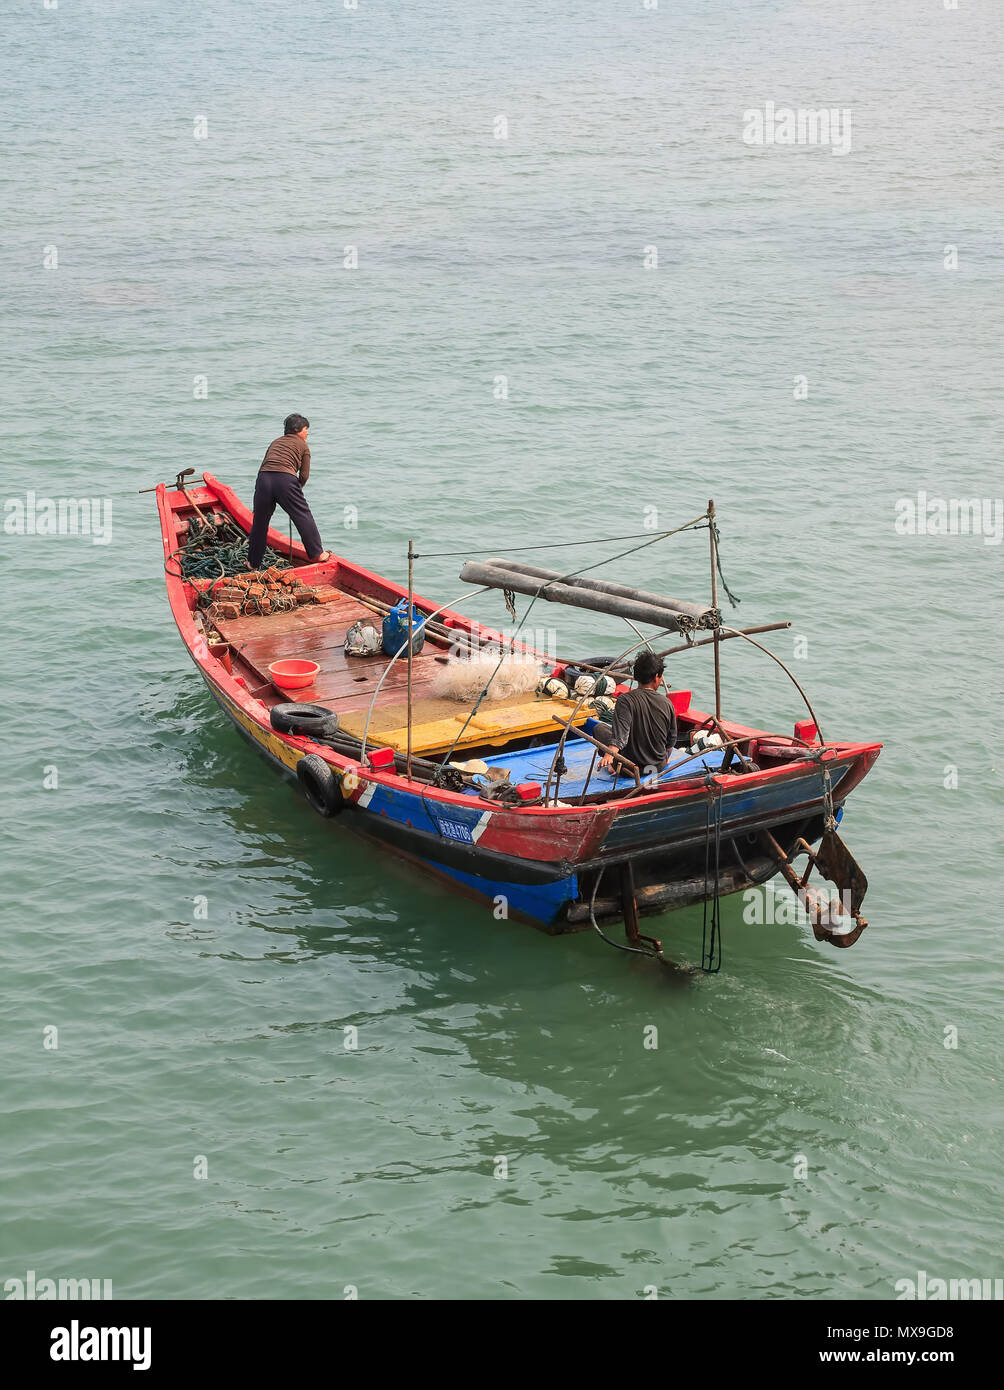 XIAMEN-MARS 22, 2009. Bateau de pêcheur traditionnel. Efforts visant à stimuler l'économie maritime de la Chine a donné lieu à l'épuisement de son stock de pêche. Banque D'Images